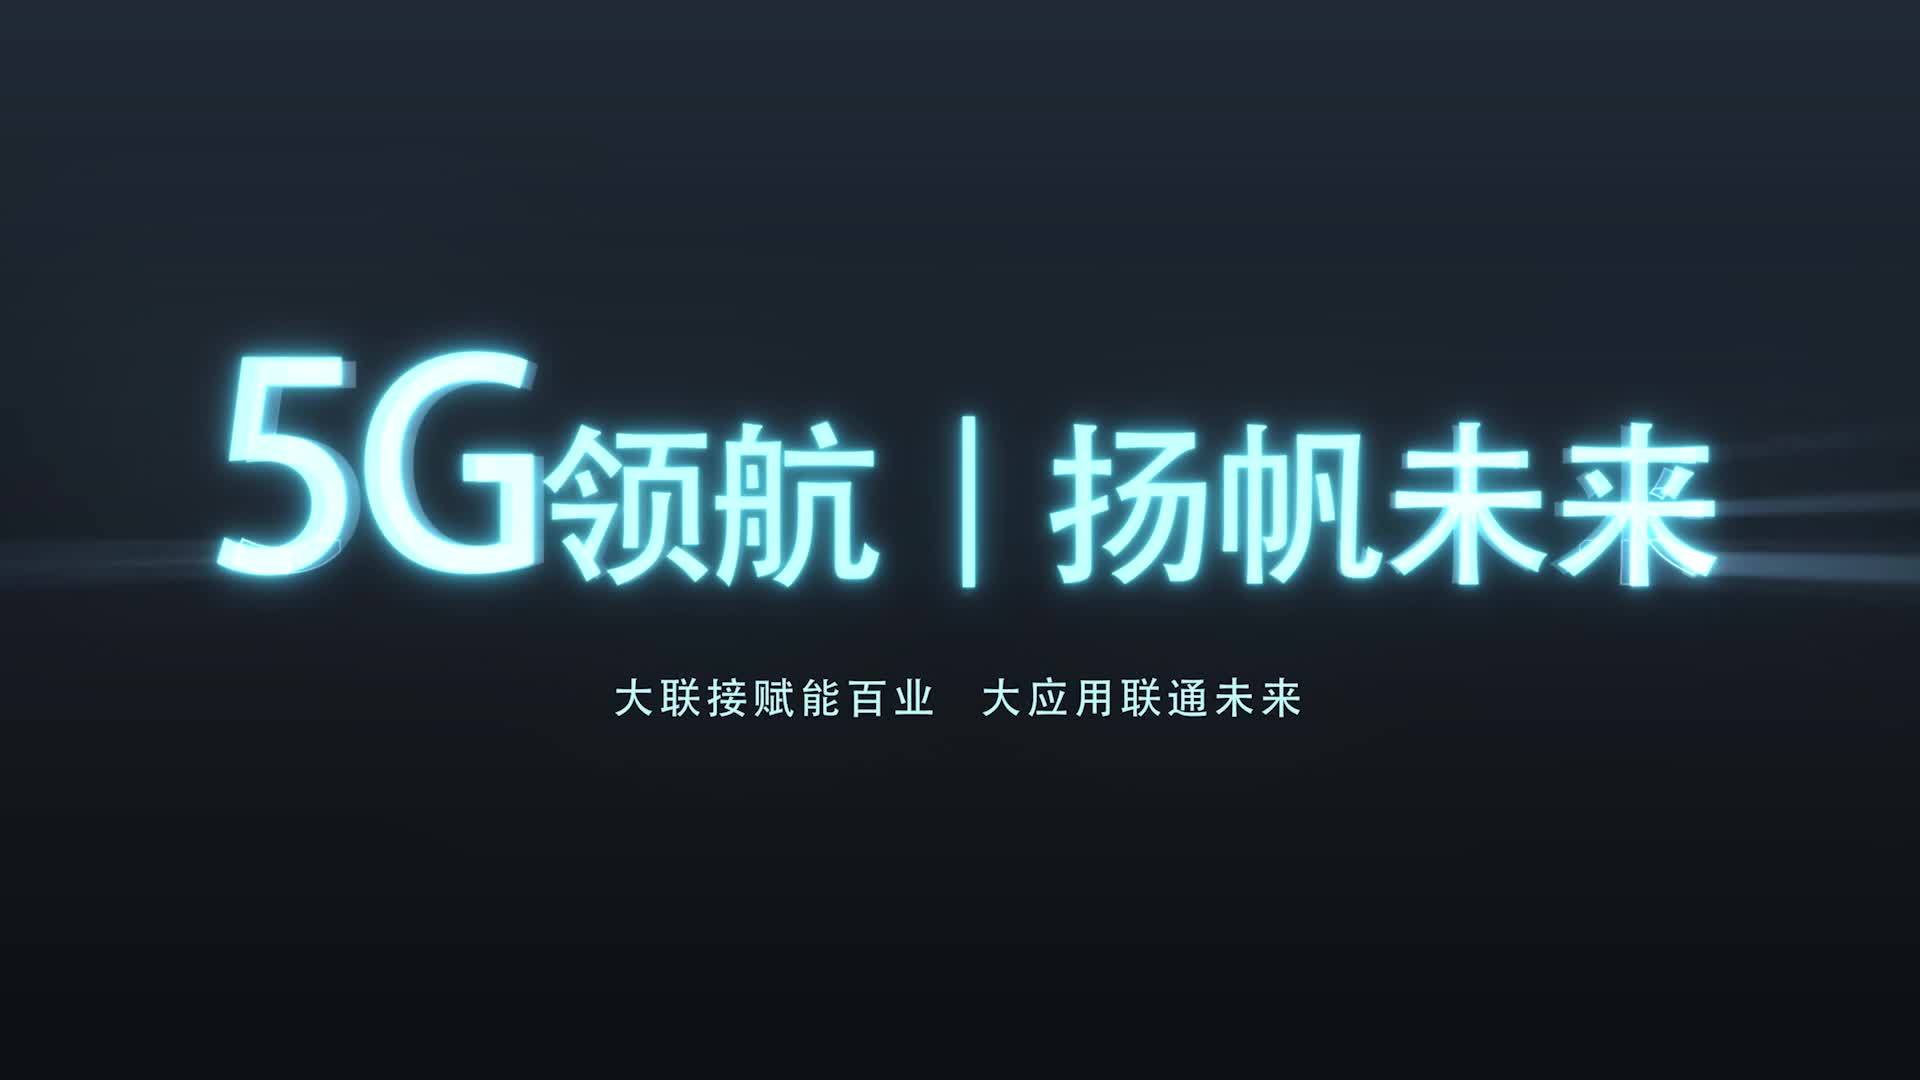 中国联通 5G 服务来袭，带你体验数字时代新篇章  第3张